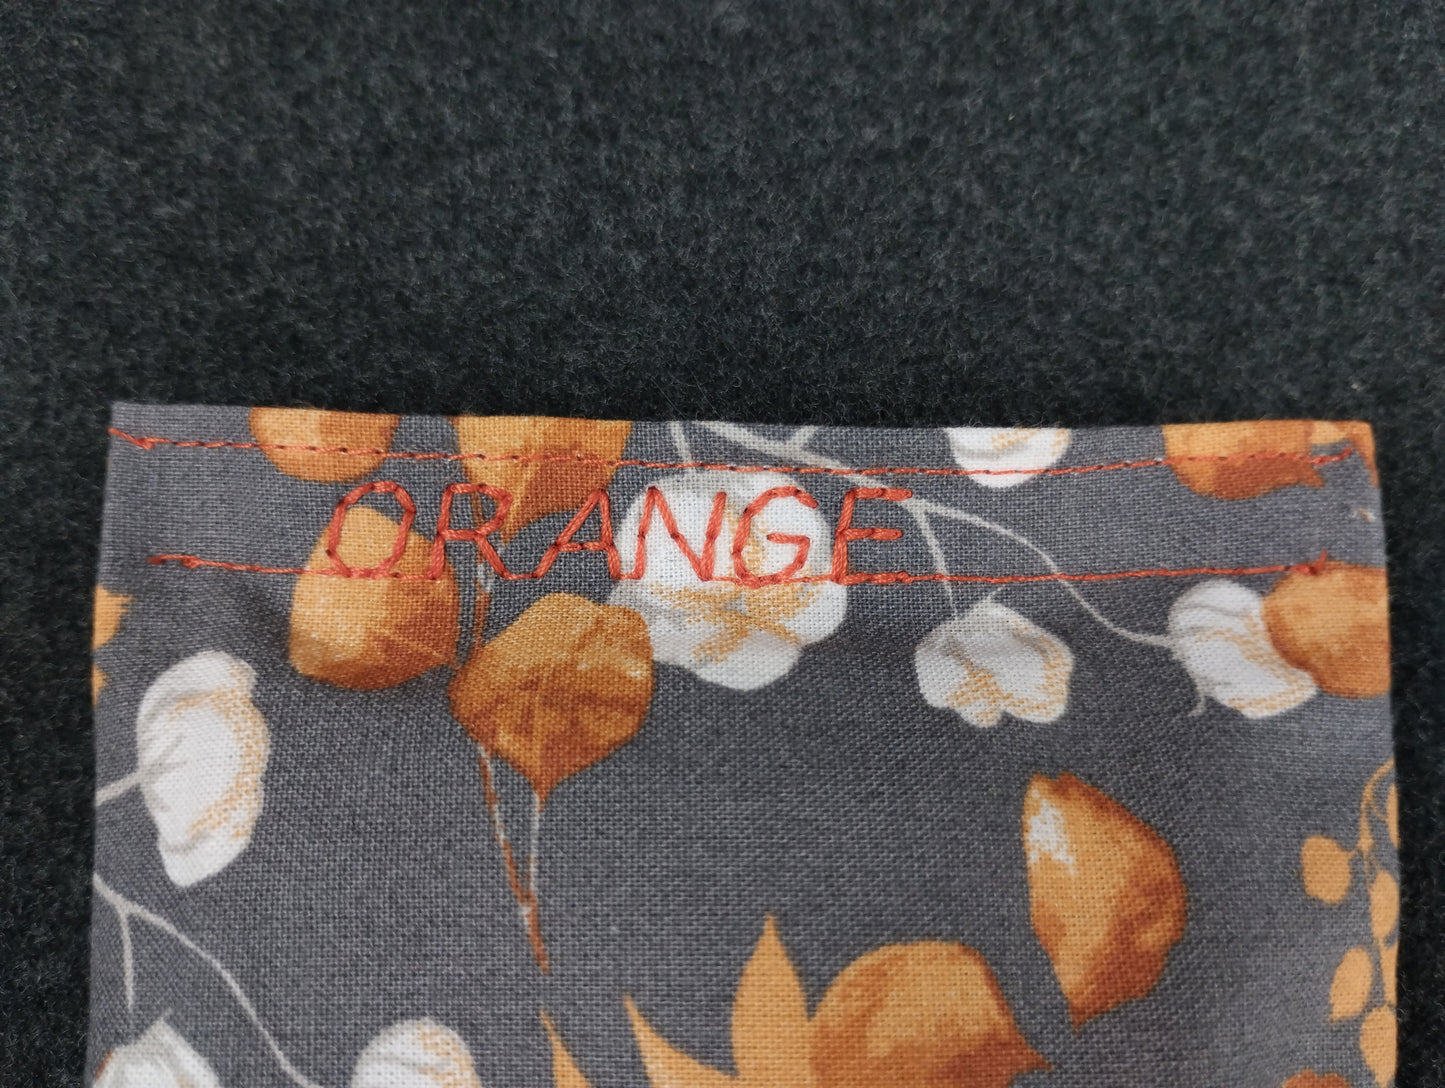 fertiges Duftkissen mit Eucalyptus/Baumwollmotiv in grau/orange. Personalisiert mit dem Wort orange in einem orangefarbenem Nähgarn